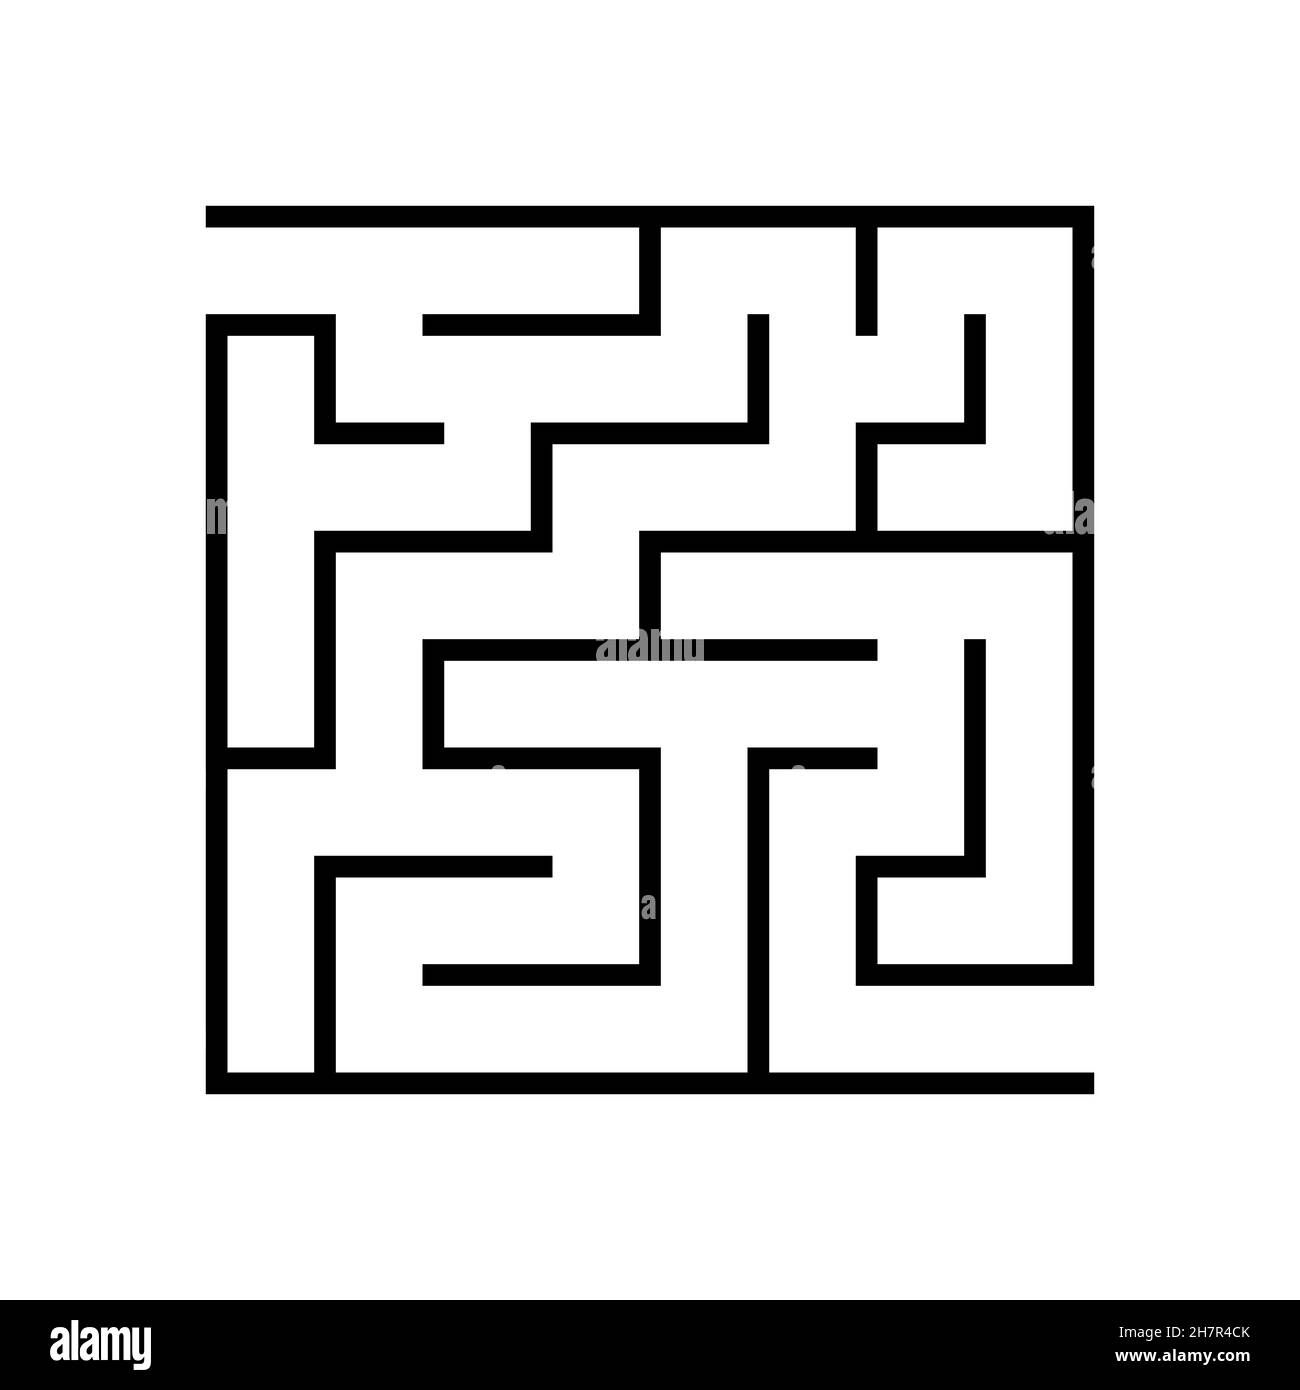 Labirinto di gioco di logica di istruzione per i bambini. Trova la strada giusta. Labirinto o puzzle design. Illustrazione vettoriale. Illustrazione Vettoriale